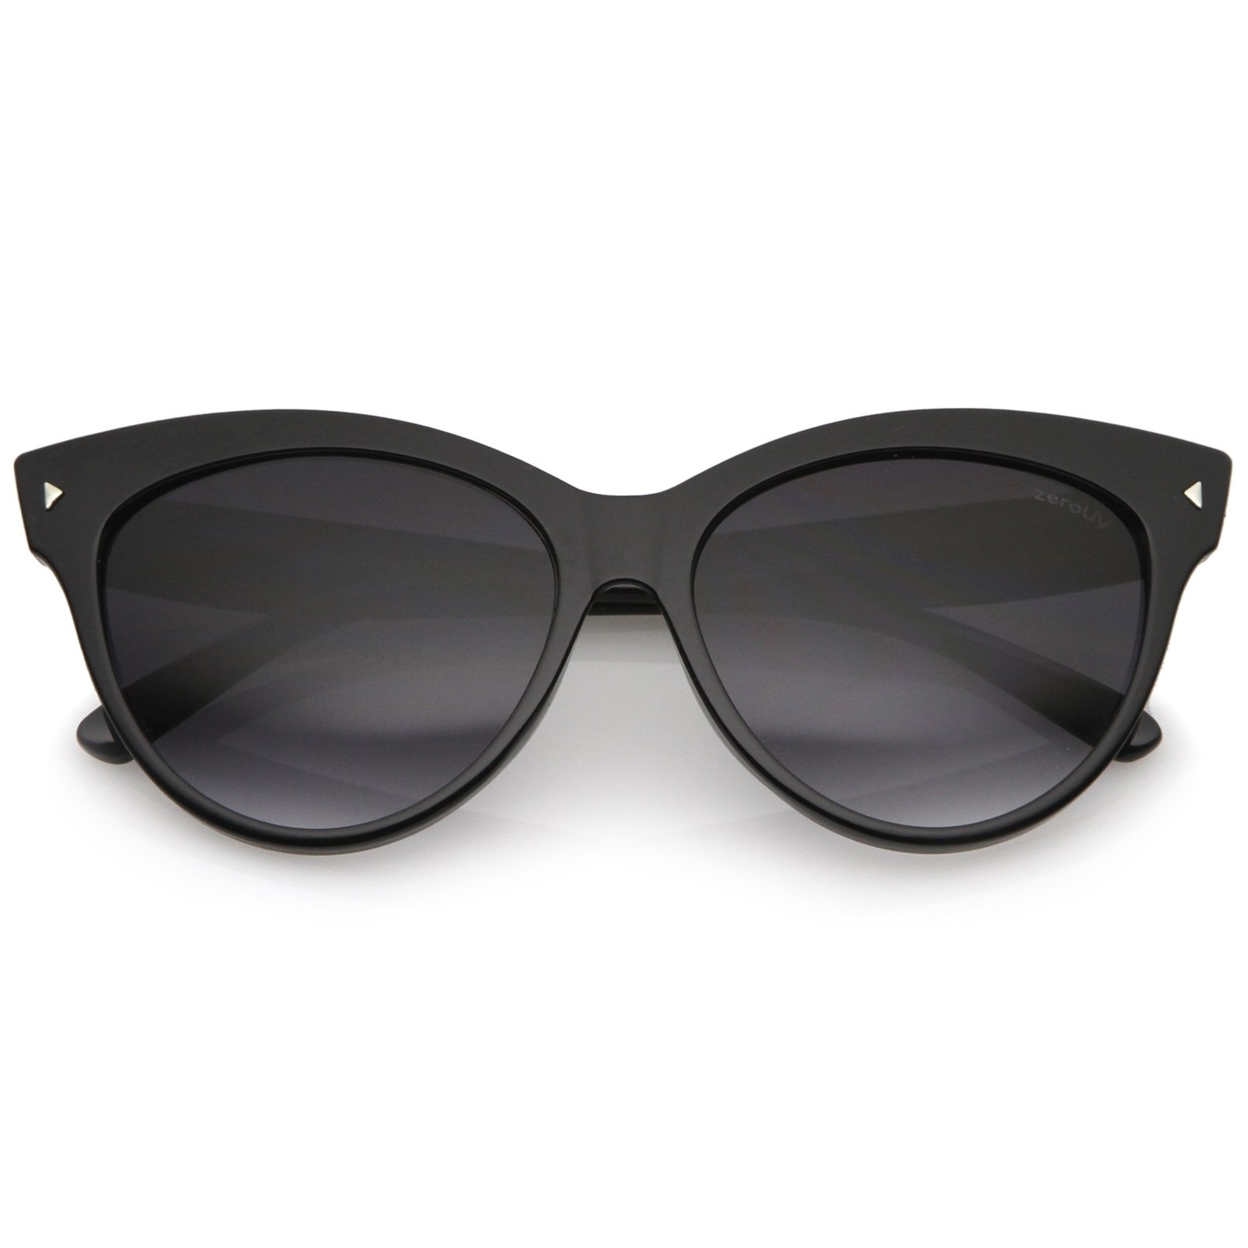 Women's Mod Oversize Horn Rimmed Cat Eye Sunglasses 52mm - Red / Lavender